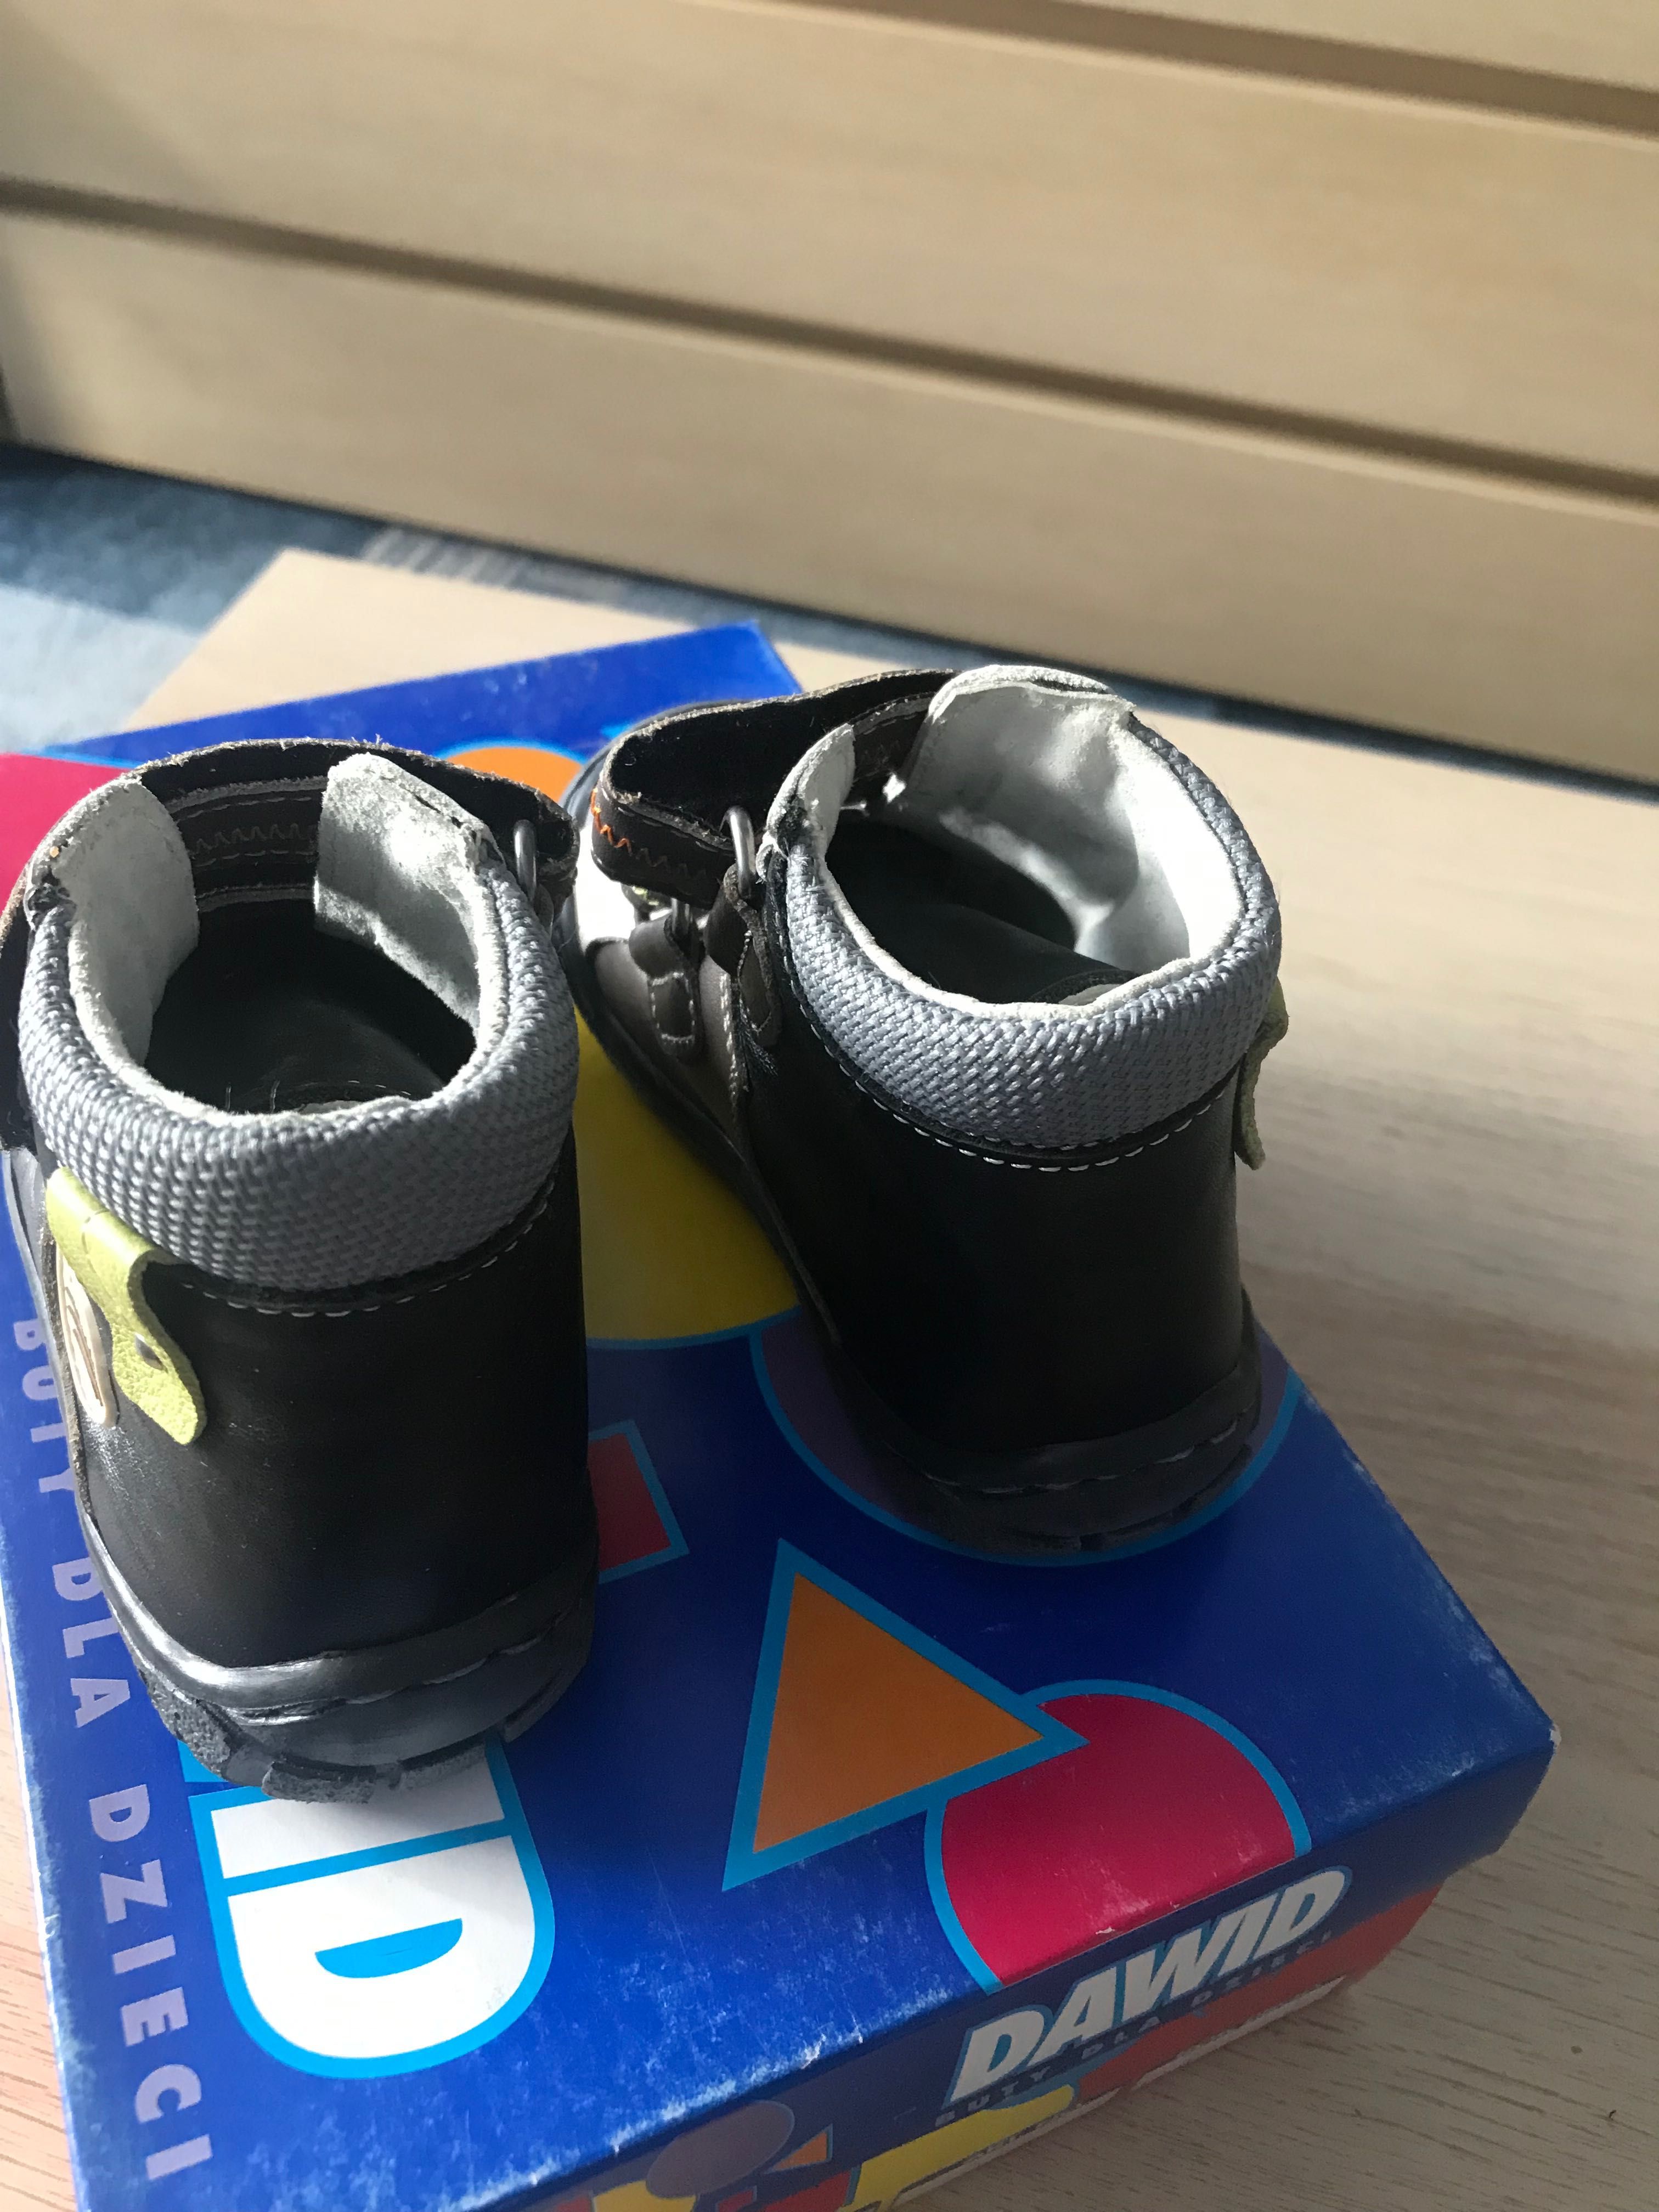 Buty trzewiki dziecięce chłopięce profilaktyczne skórzane roz 22 dawid